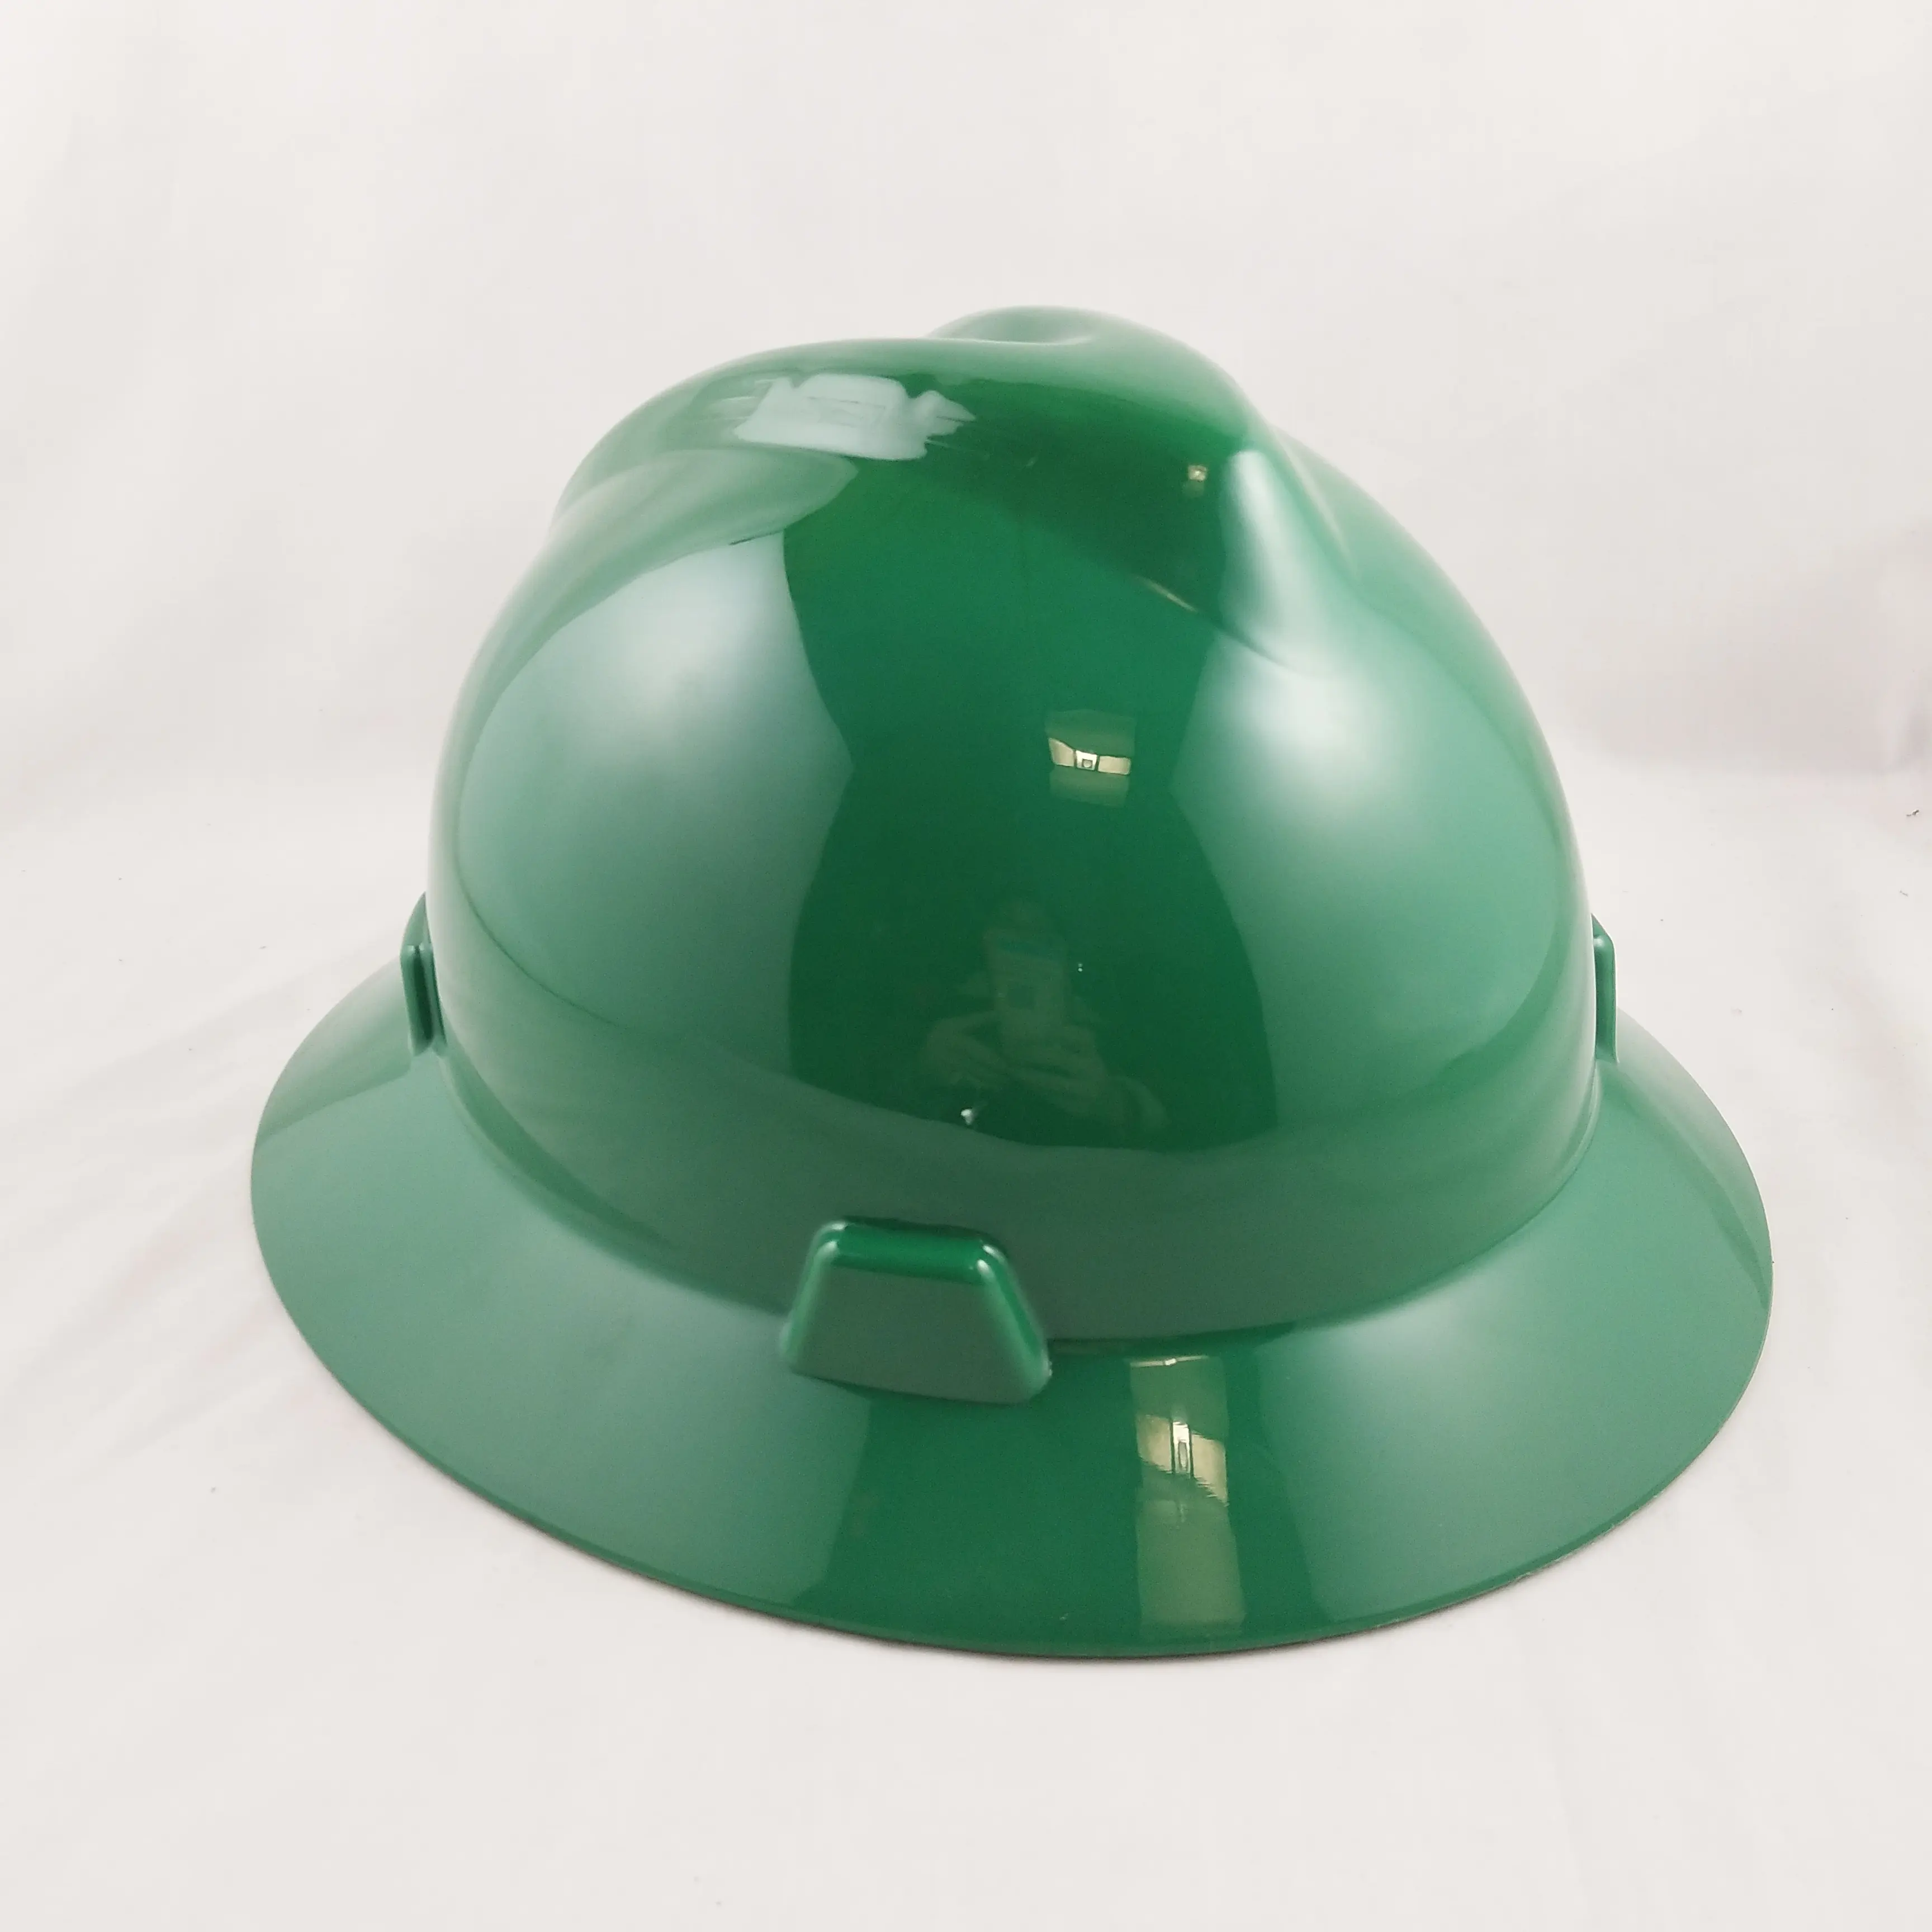 An ninh cao PE bảo vệ xây dựng xây dựng an toàn Mũ bảo hiểm V hình dạng mũ cứng an toàn Mũ bảo hiểm